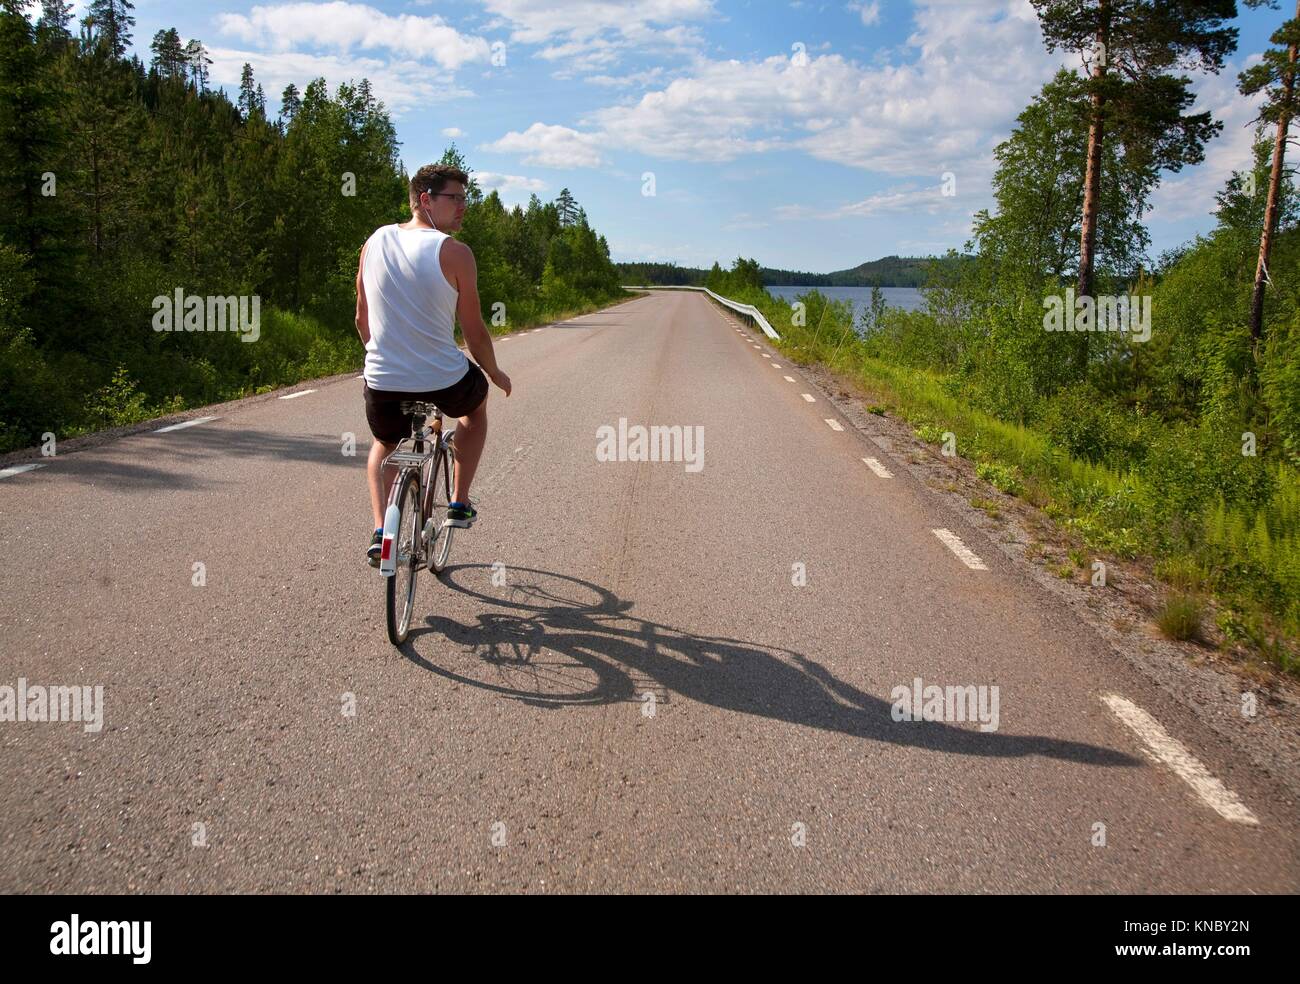 Hombre montando bicicleta en la carretera, el paisaje del norte de Suecia. Foto de stock